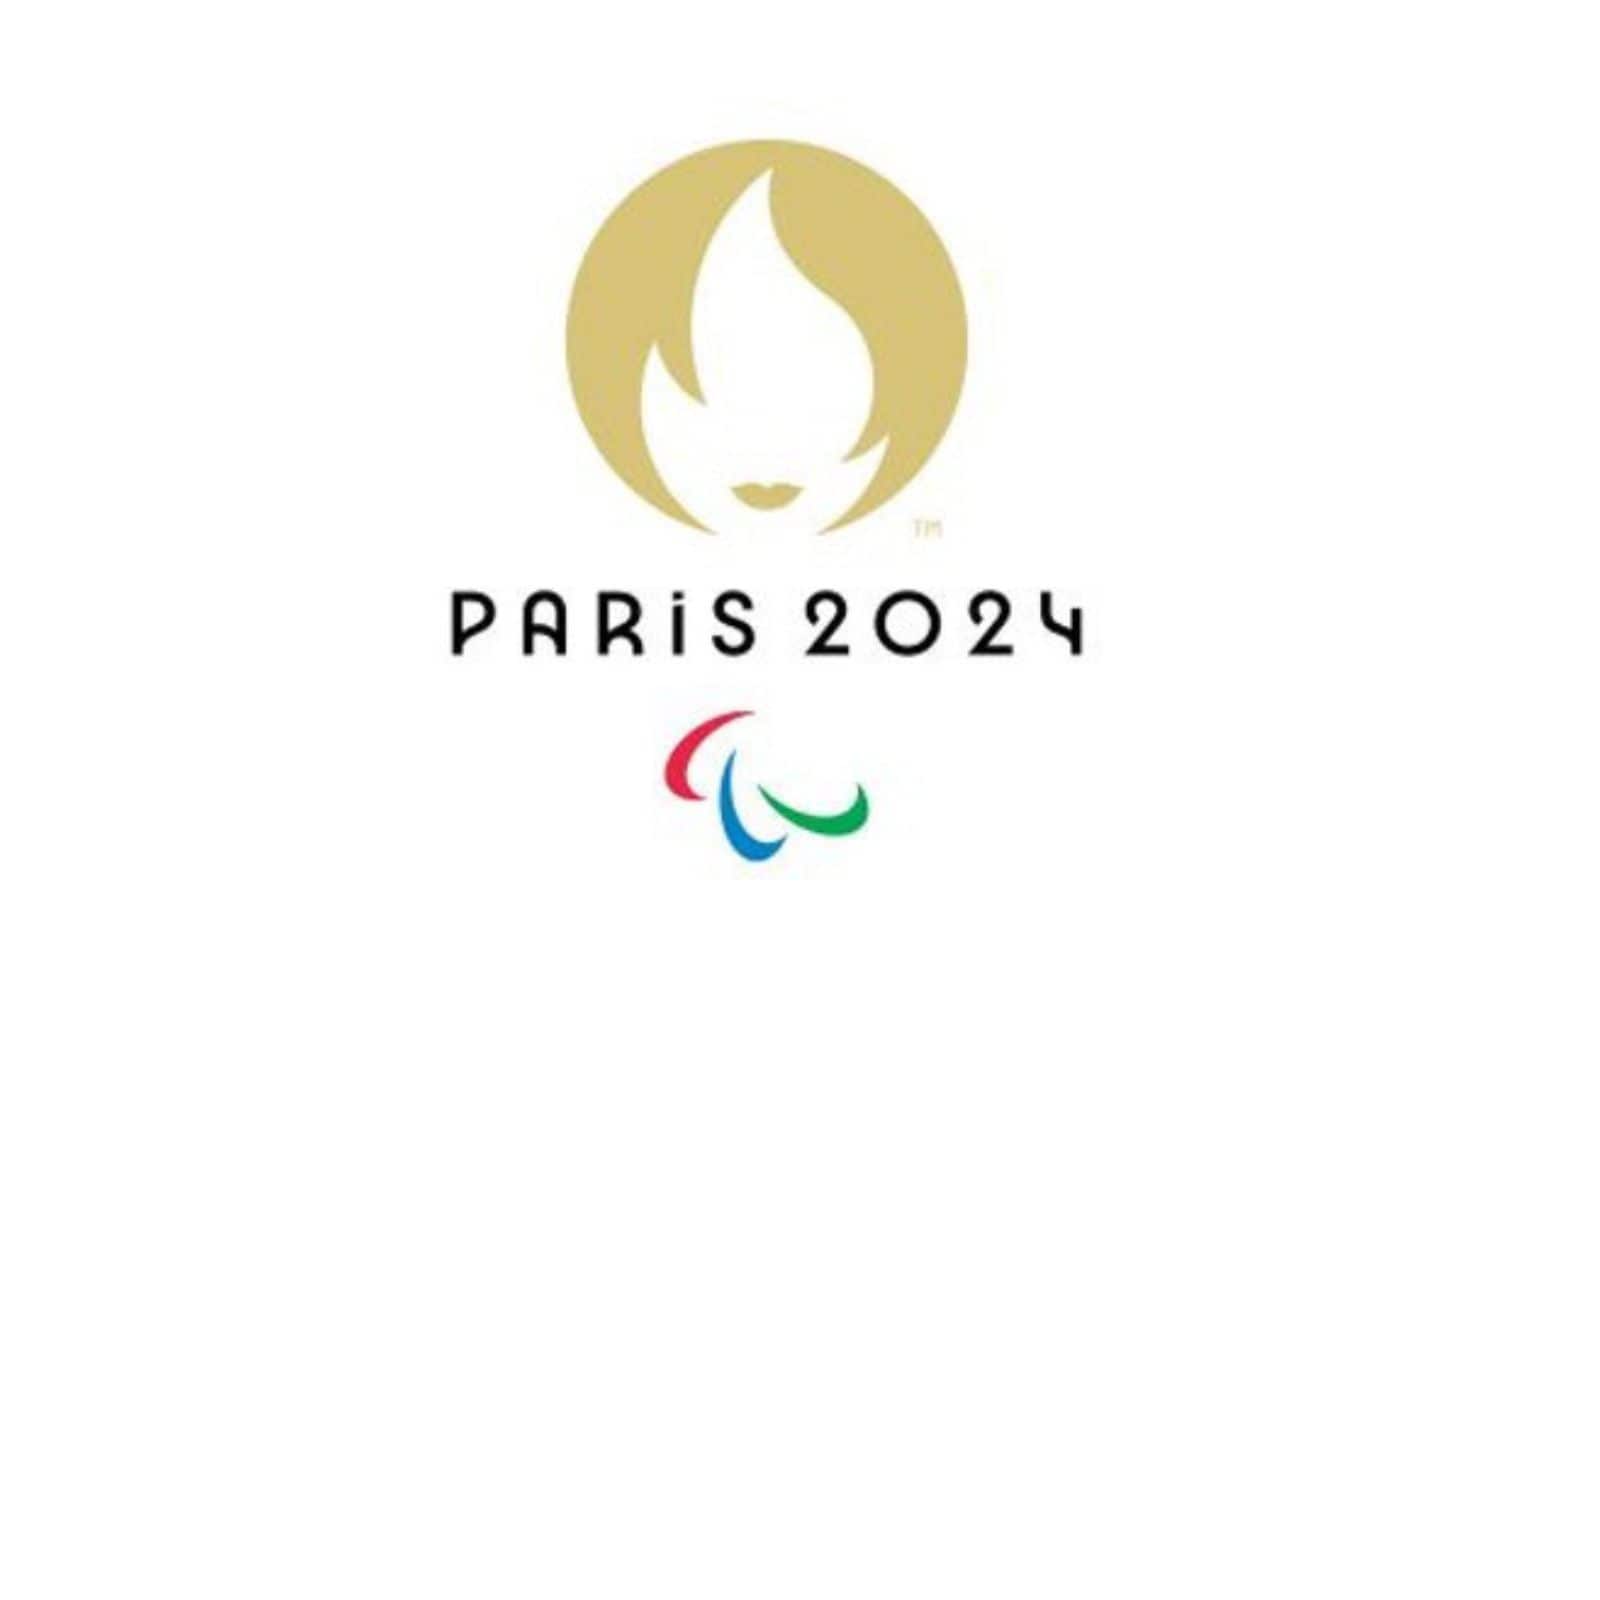 Paris 2024 announces Paralympic Games event calendar